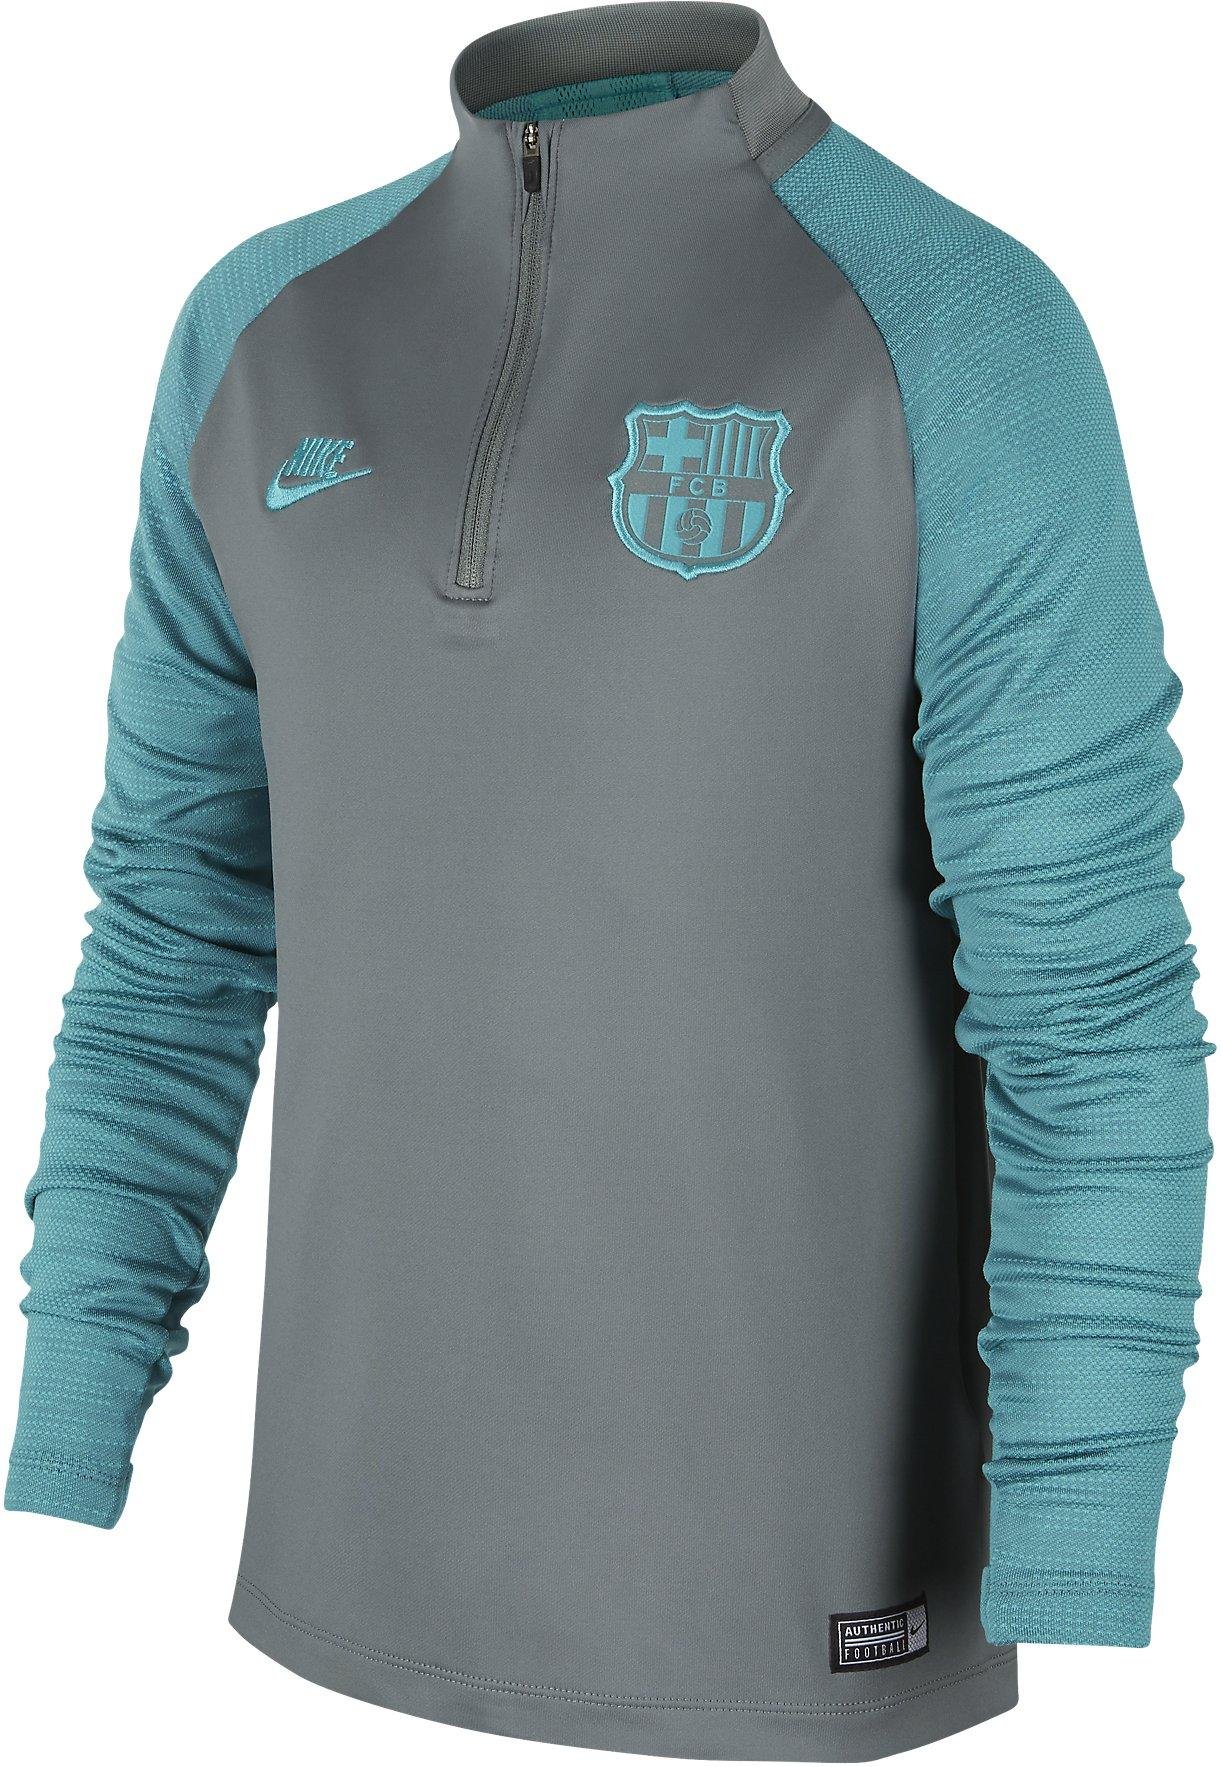 Dětské fotbalové tréninkové tričko s dlouhým rukávem Nike FC Barcelona 2019/20